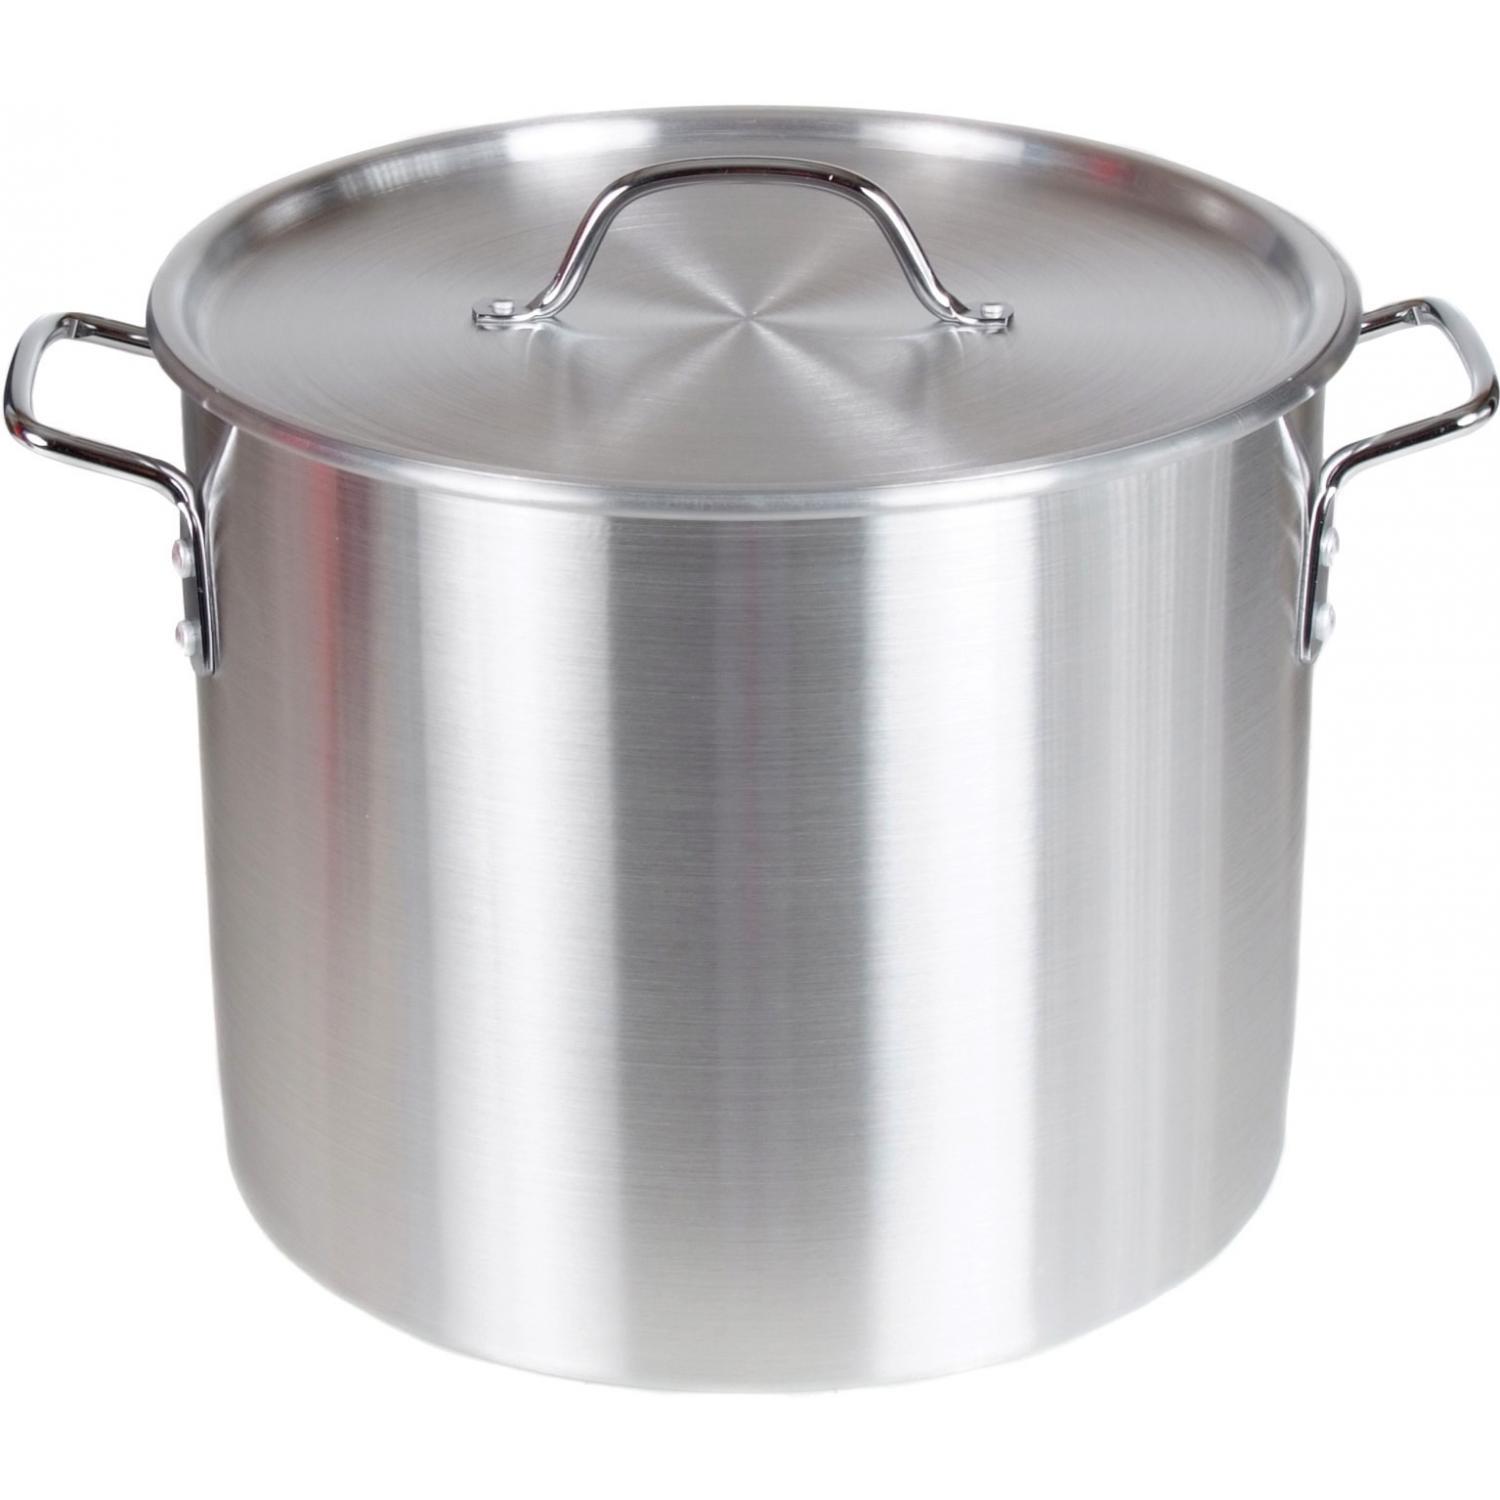  Cajun Classics Cookware 10-Quart Stock Pot -10080: Home &  Kitchen